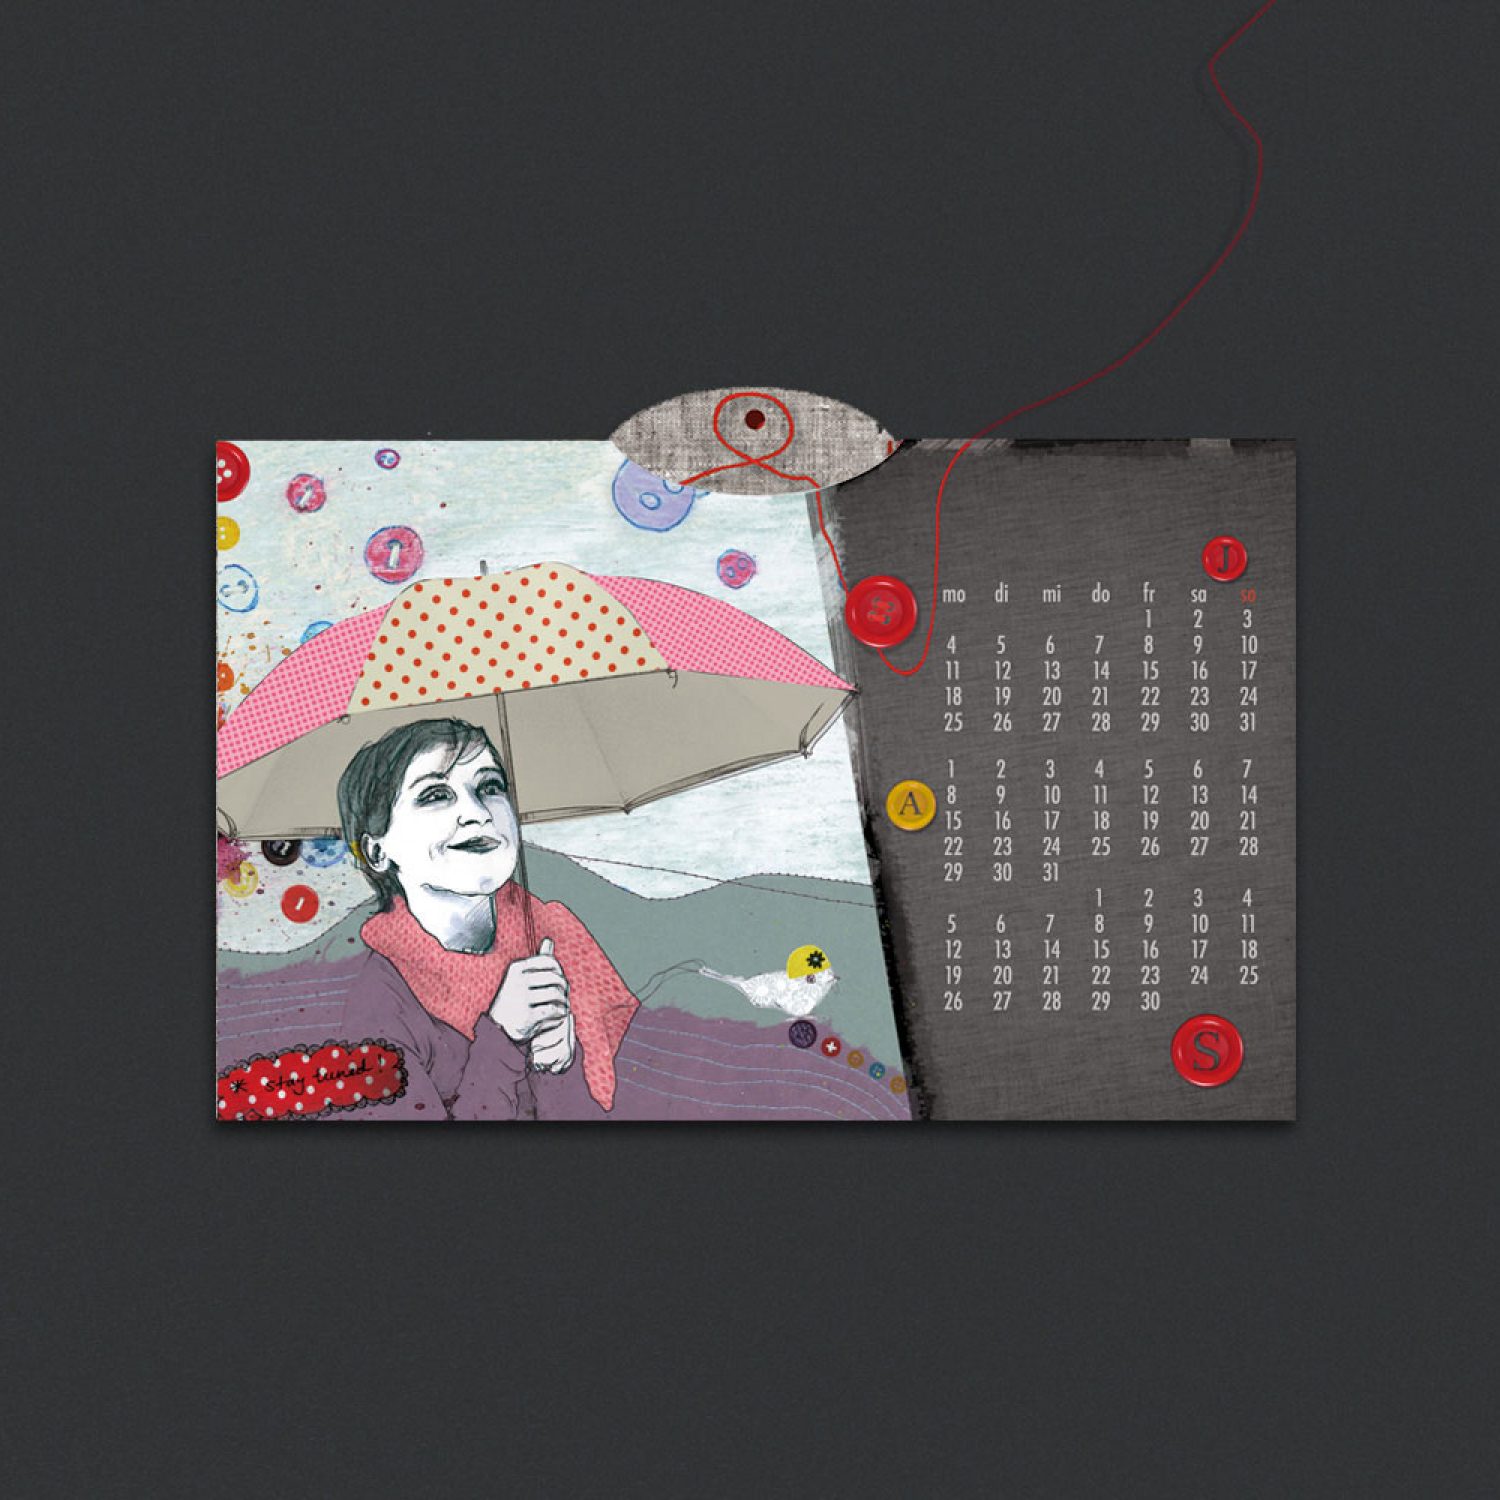 dominika-przybylska-illustration-kalender-avance-04